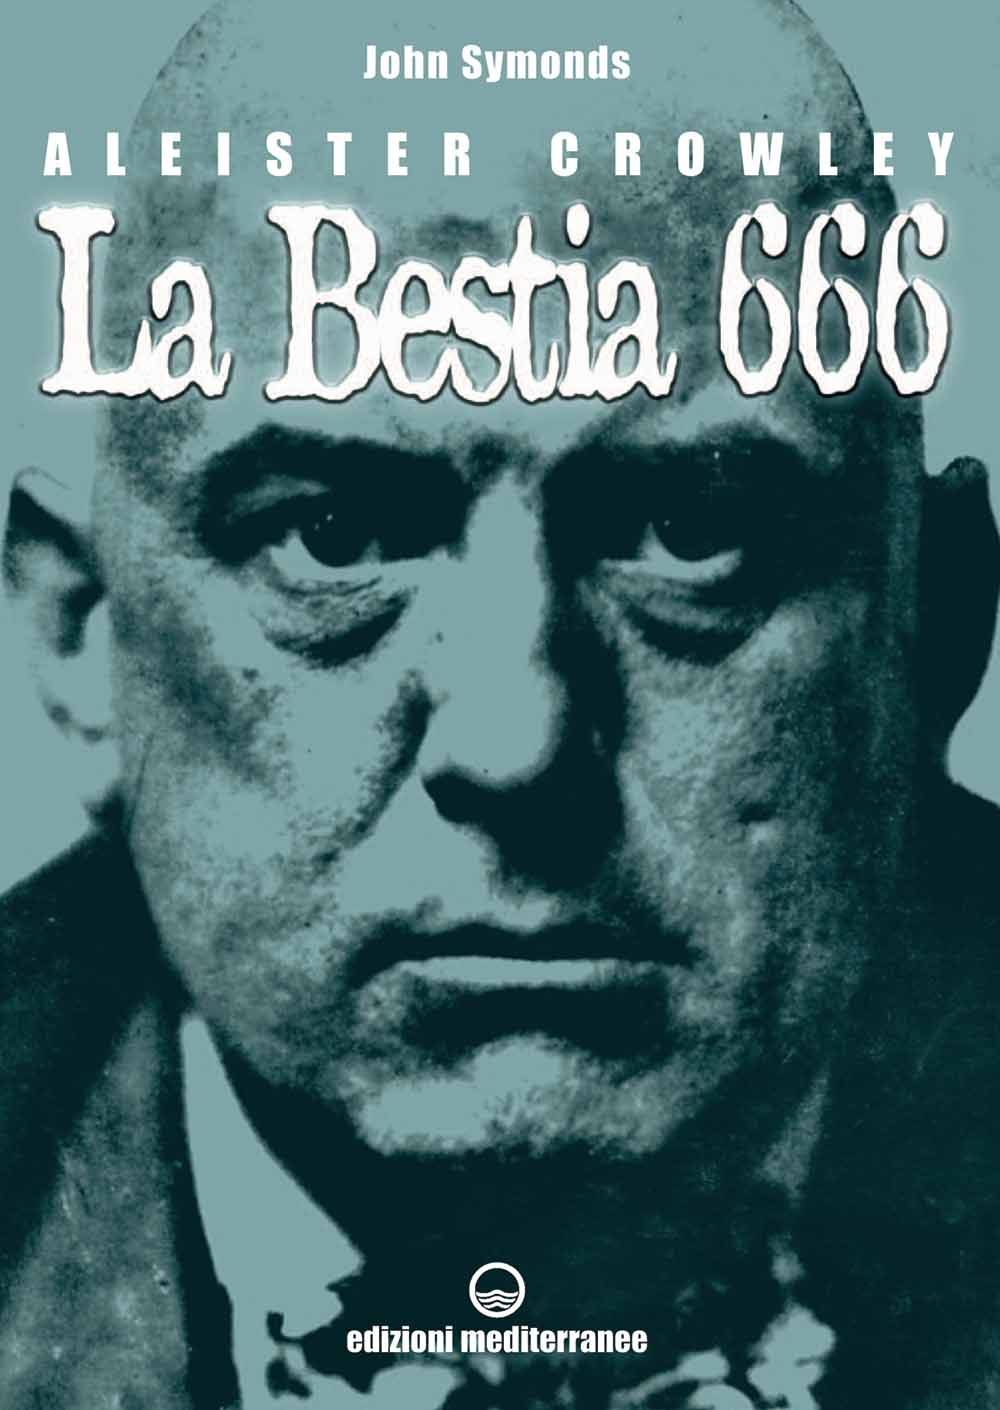 Libri John Symonds - Aleister Crowley. La Bestia 666 NUOVO SIGILLATO, EDIZIONE DEL 21/07/2006 SUBITO DISPONIBILE